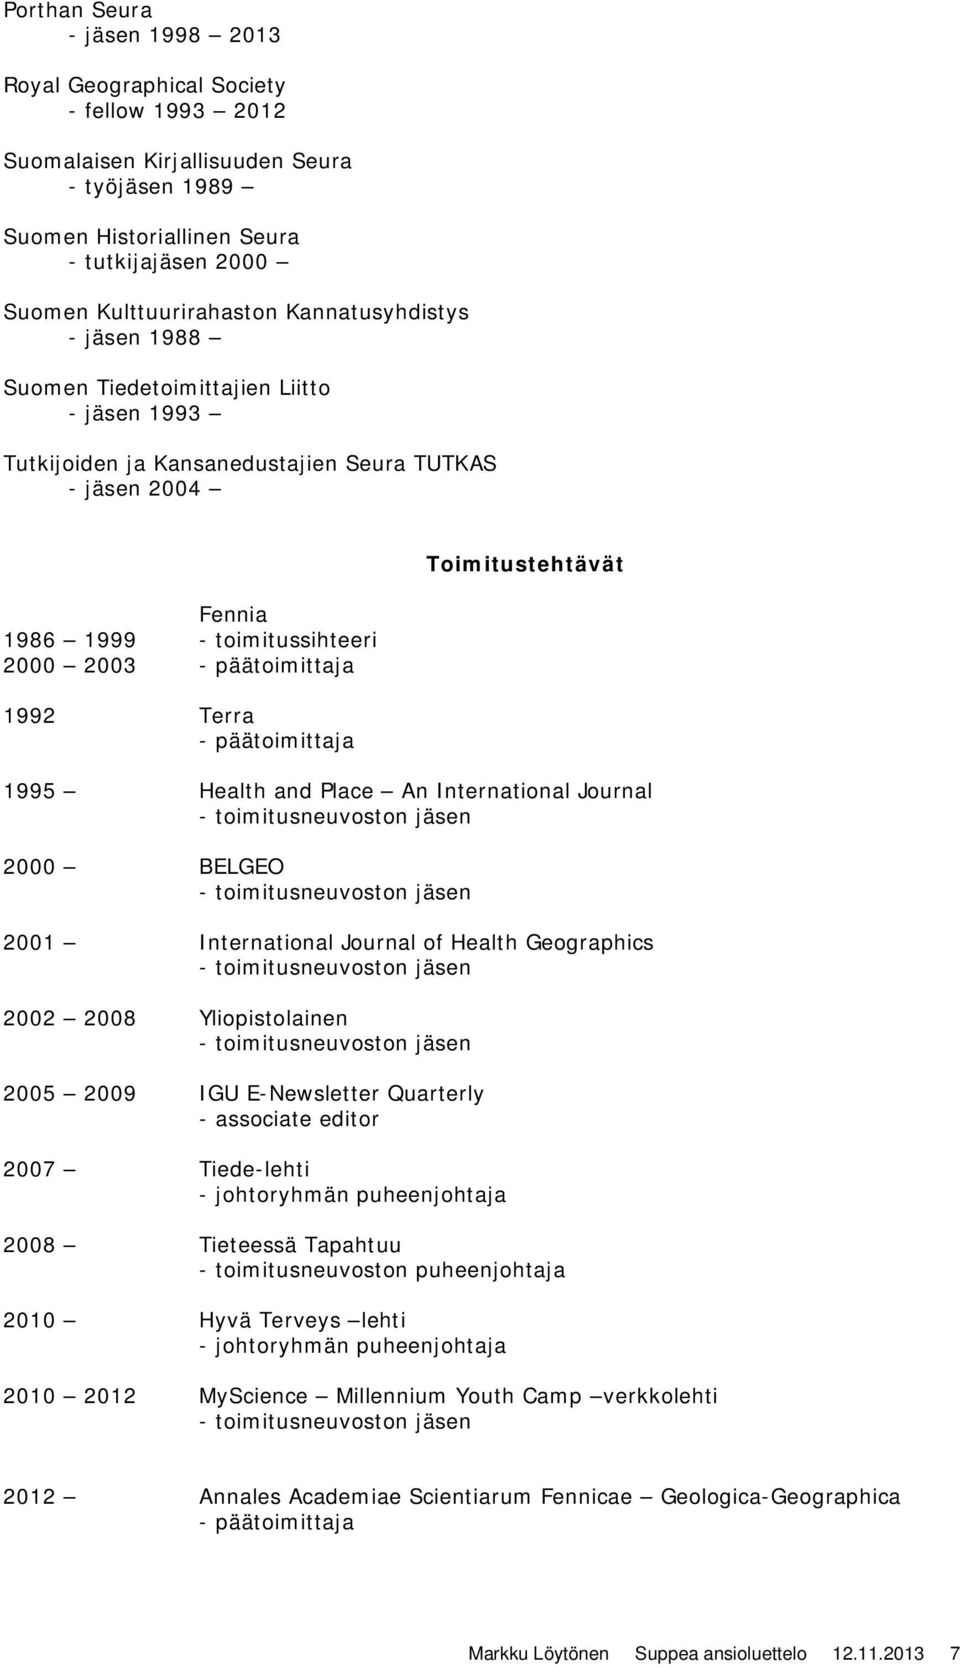 Terra - päätoimittaja Toimitustehtävät 1995 Health and Place An International Journal - toimitusneuvoston jäsen 2000 BELGEO - toimitusneuvoston jäsen 2001 International Journal of Health Geographics